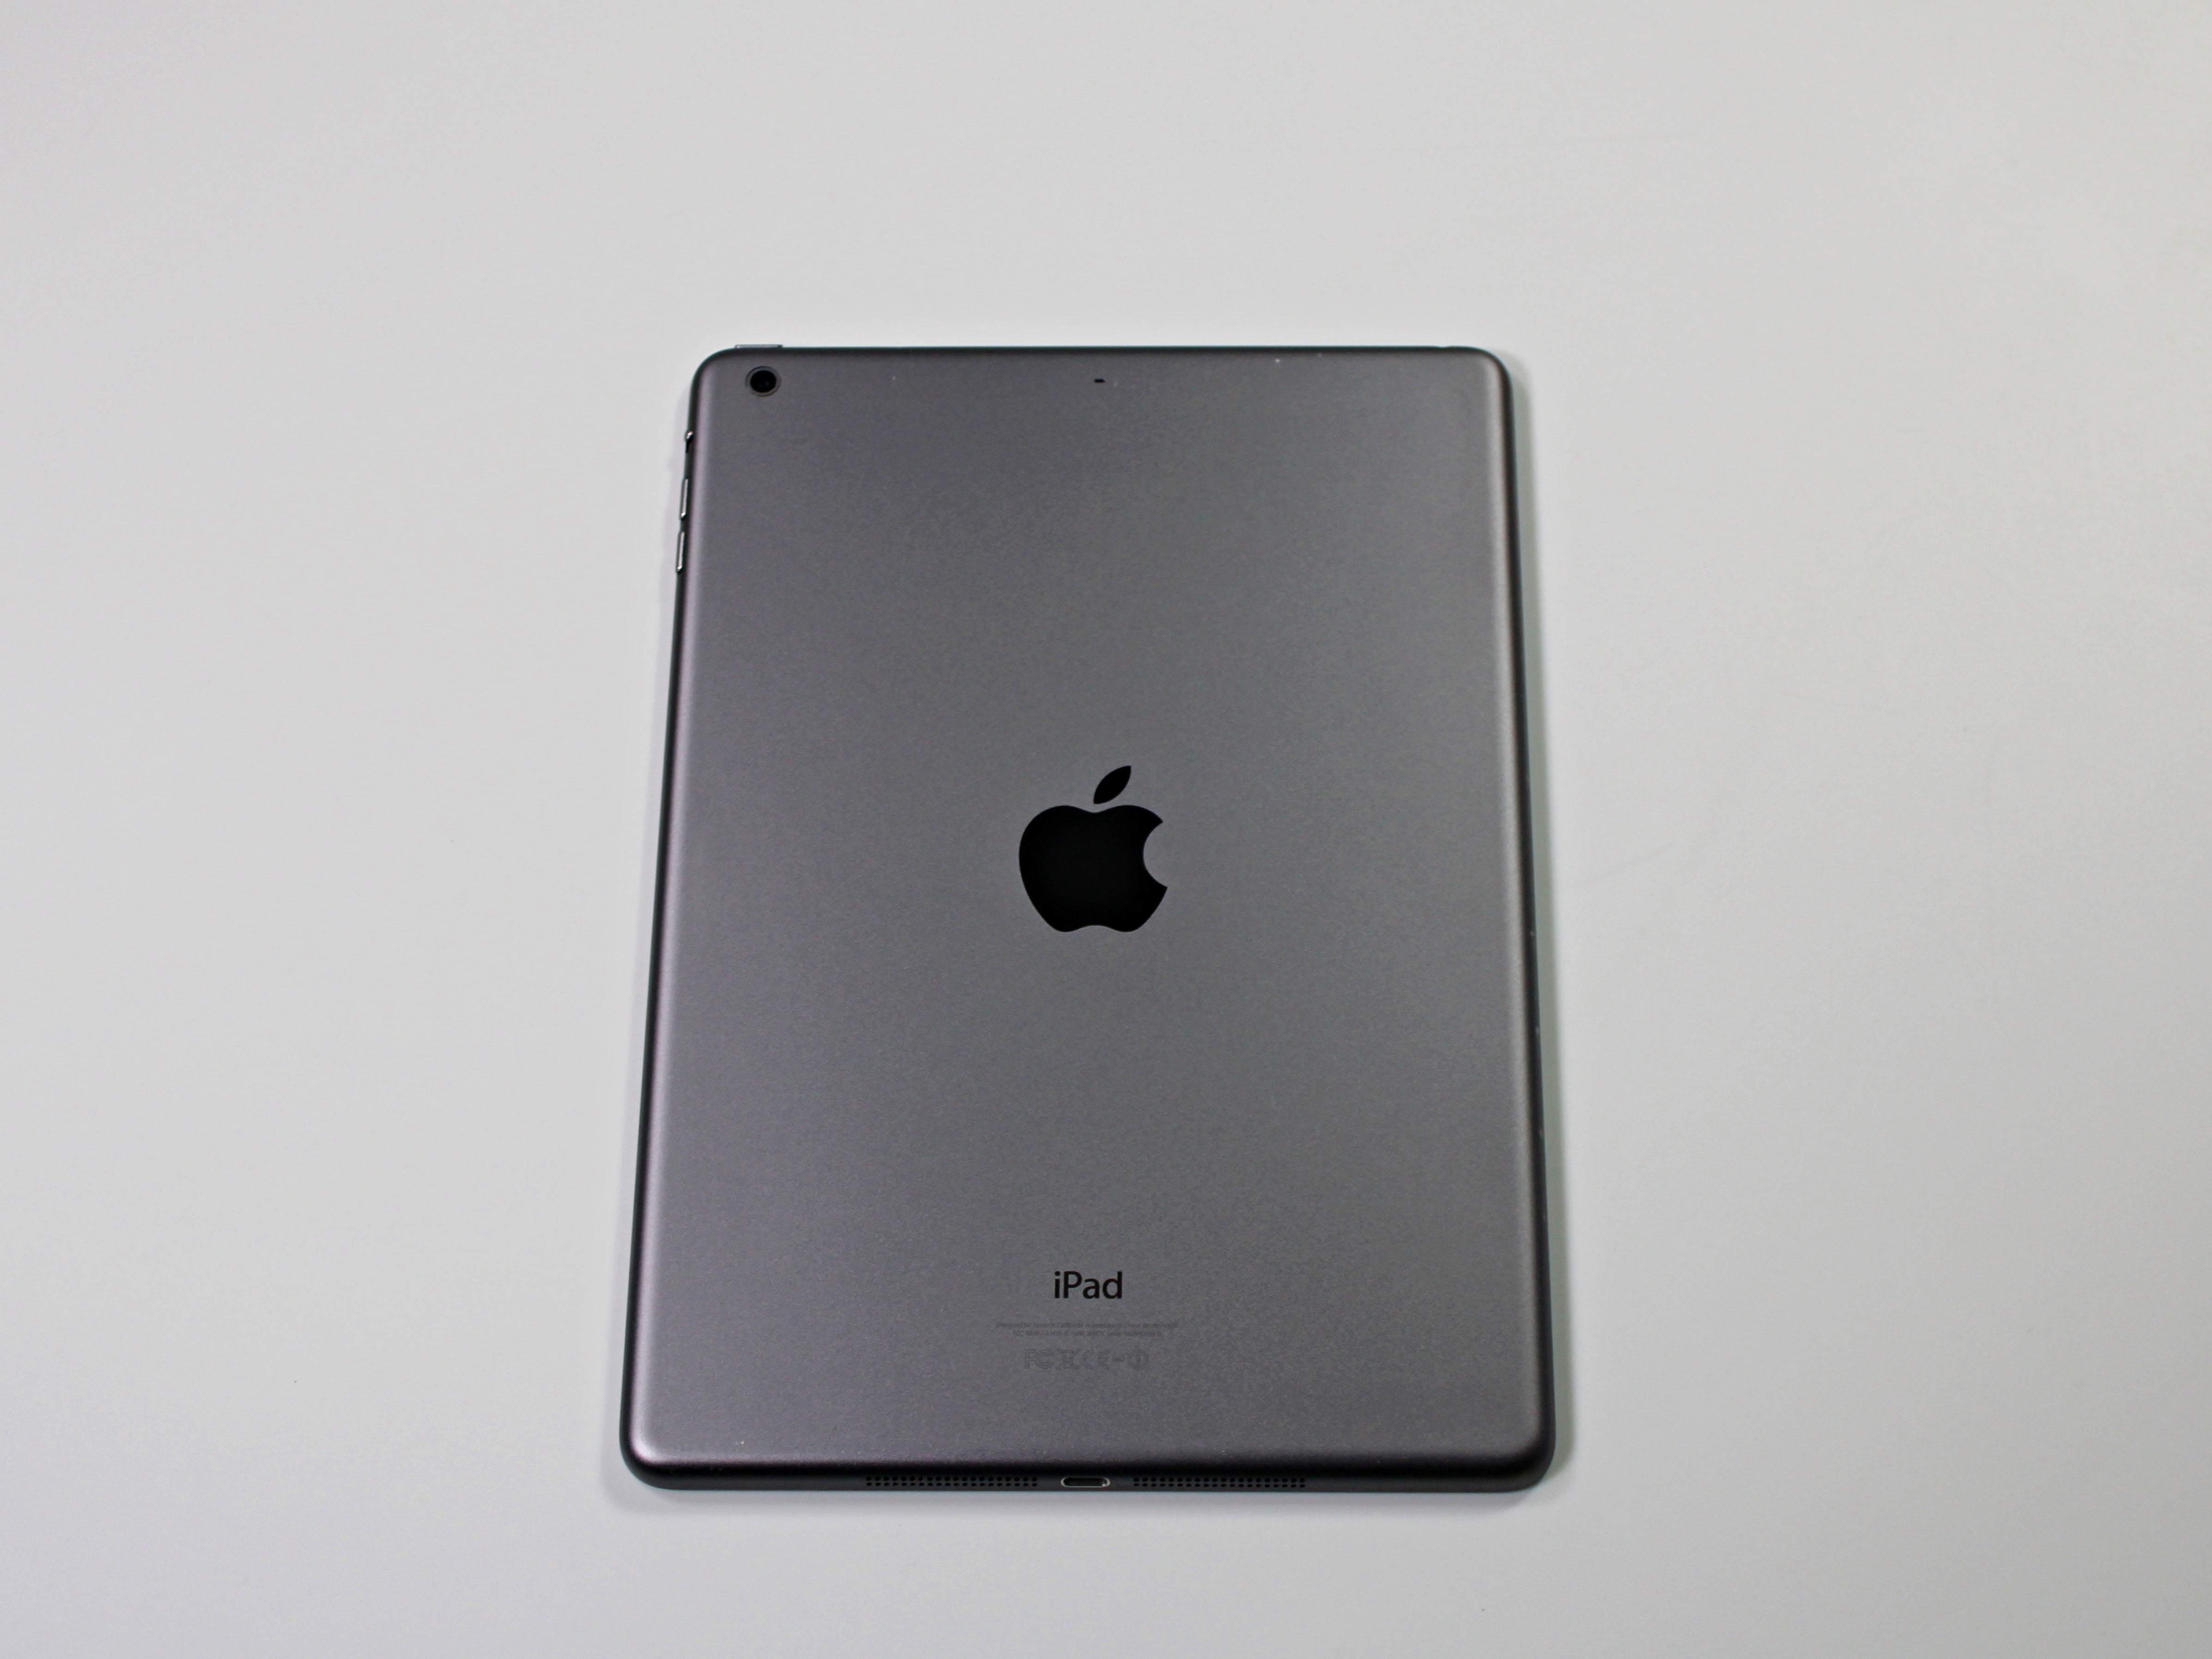  Apple iPad Mini 4, 16GB, Space Gray - WiFi (Renewed) :  Electronics